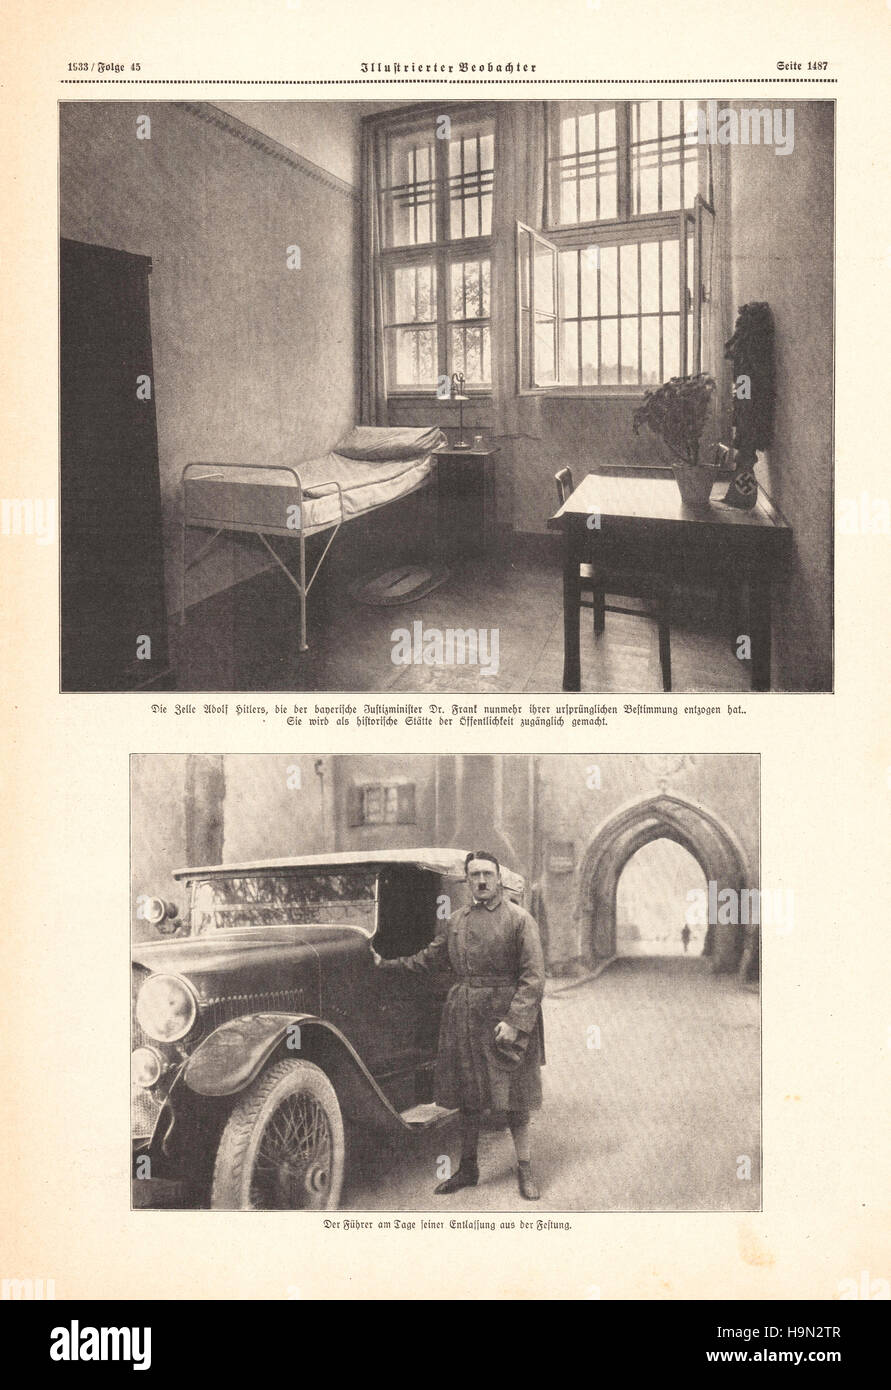 1933 Illustrierte Beobachter page 1487 Adolf Hitler's cell in Landsberg prison Stock Photo